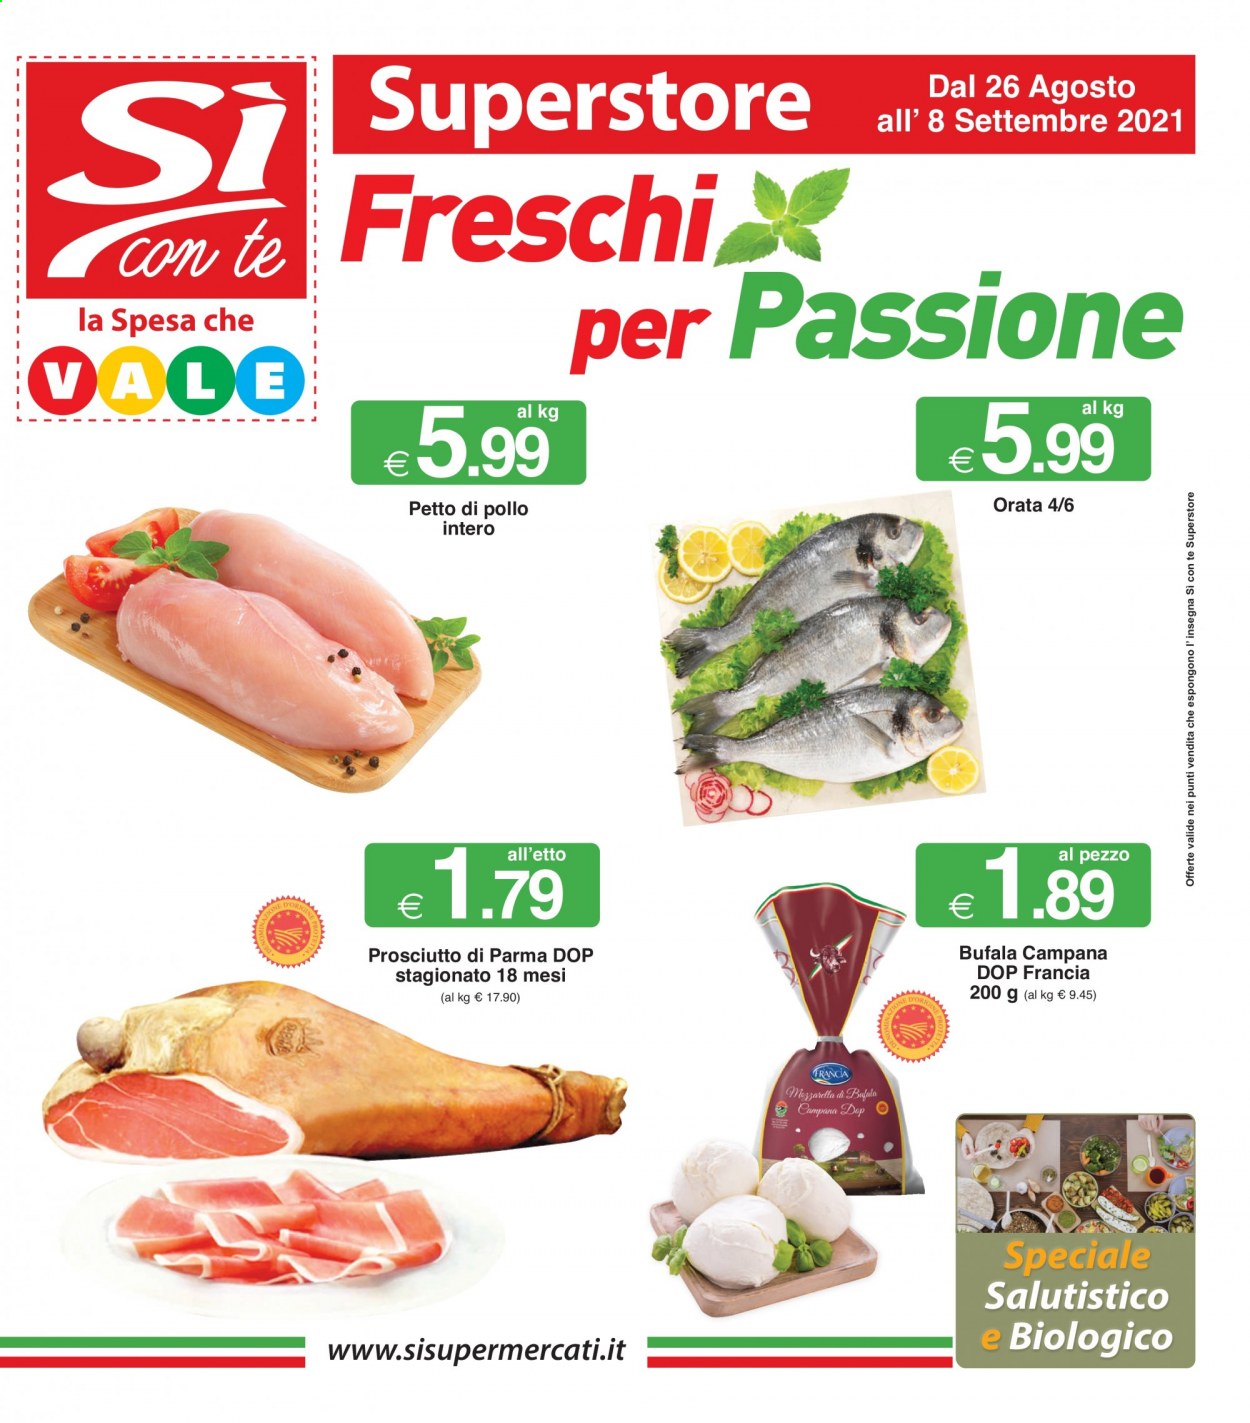 thumbnail - Volantino Si con te Superstore - 26/8/2021 - 8/9/2021 - Prodotti in offerta - petto di pollo, pollo intero, orata, prosciutto, Prosciutto di Parma. Pagina 1.